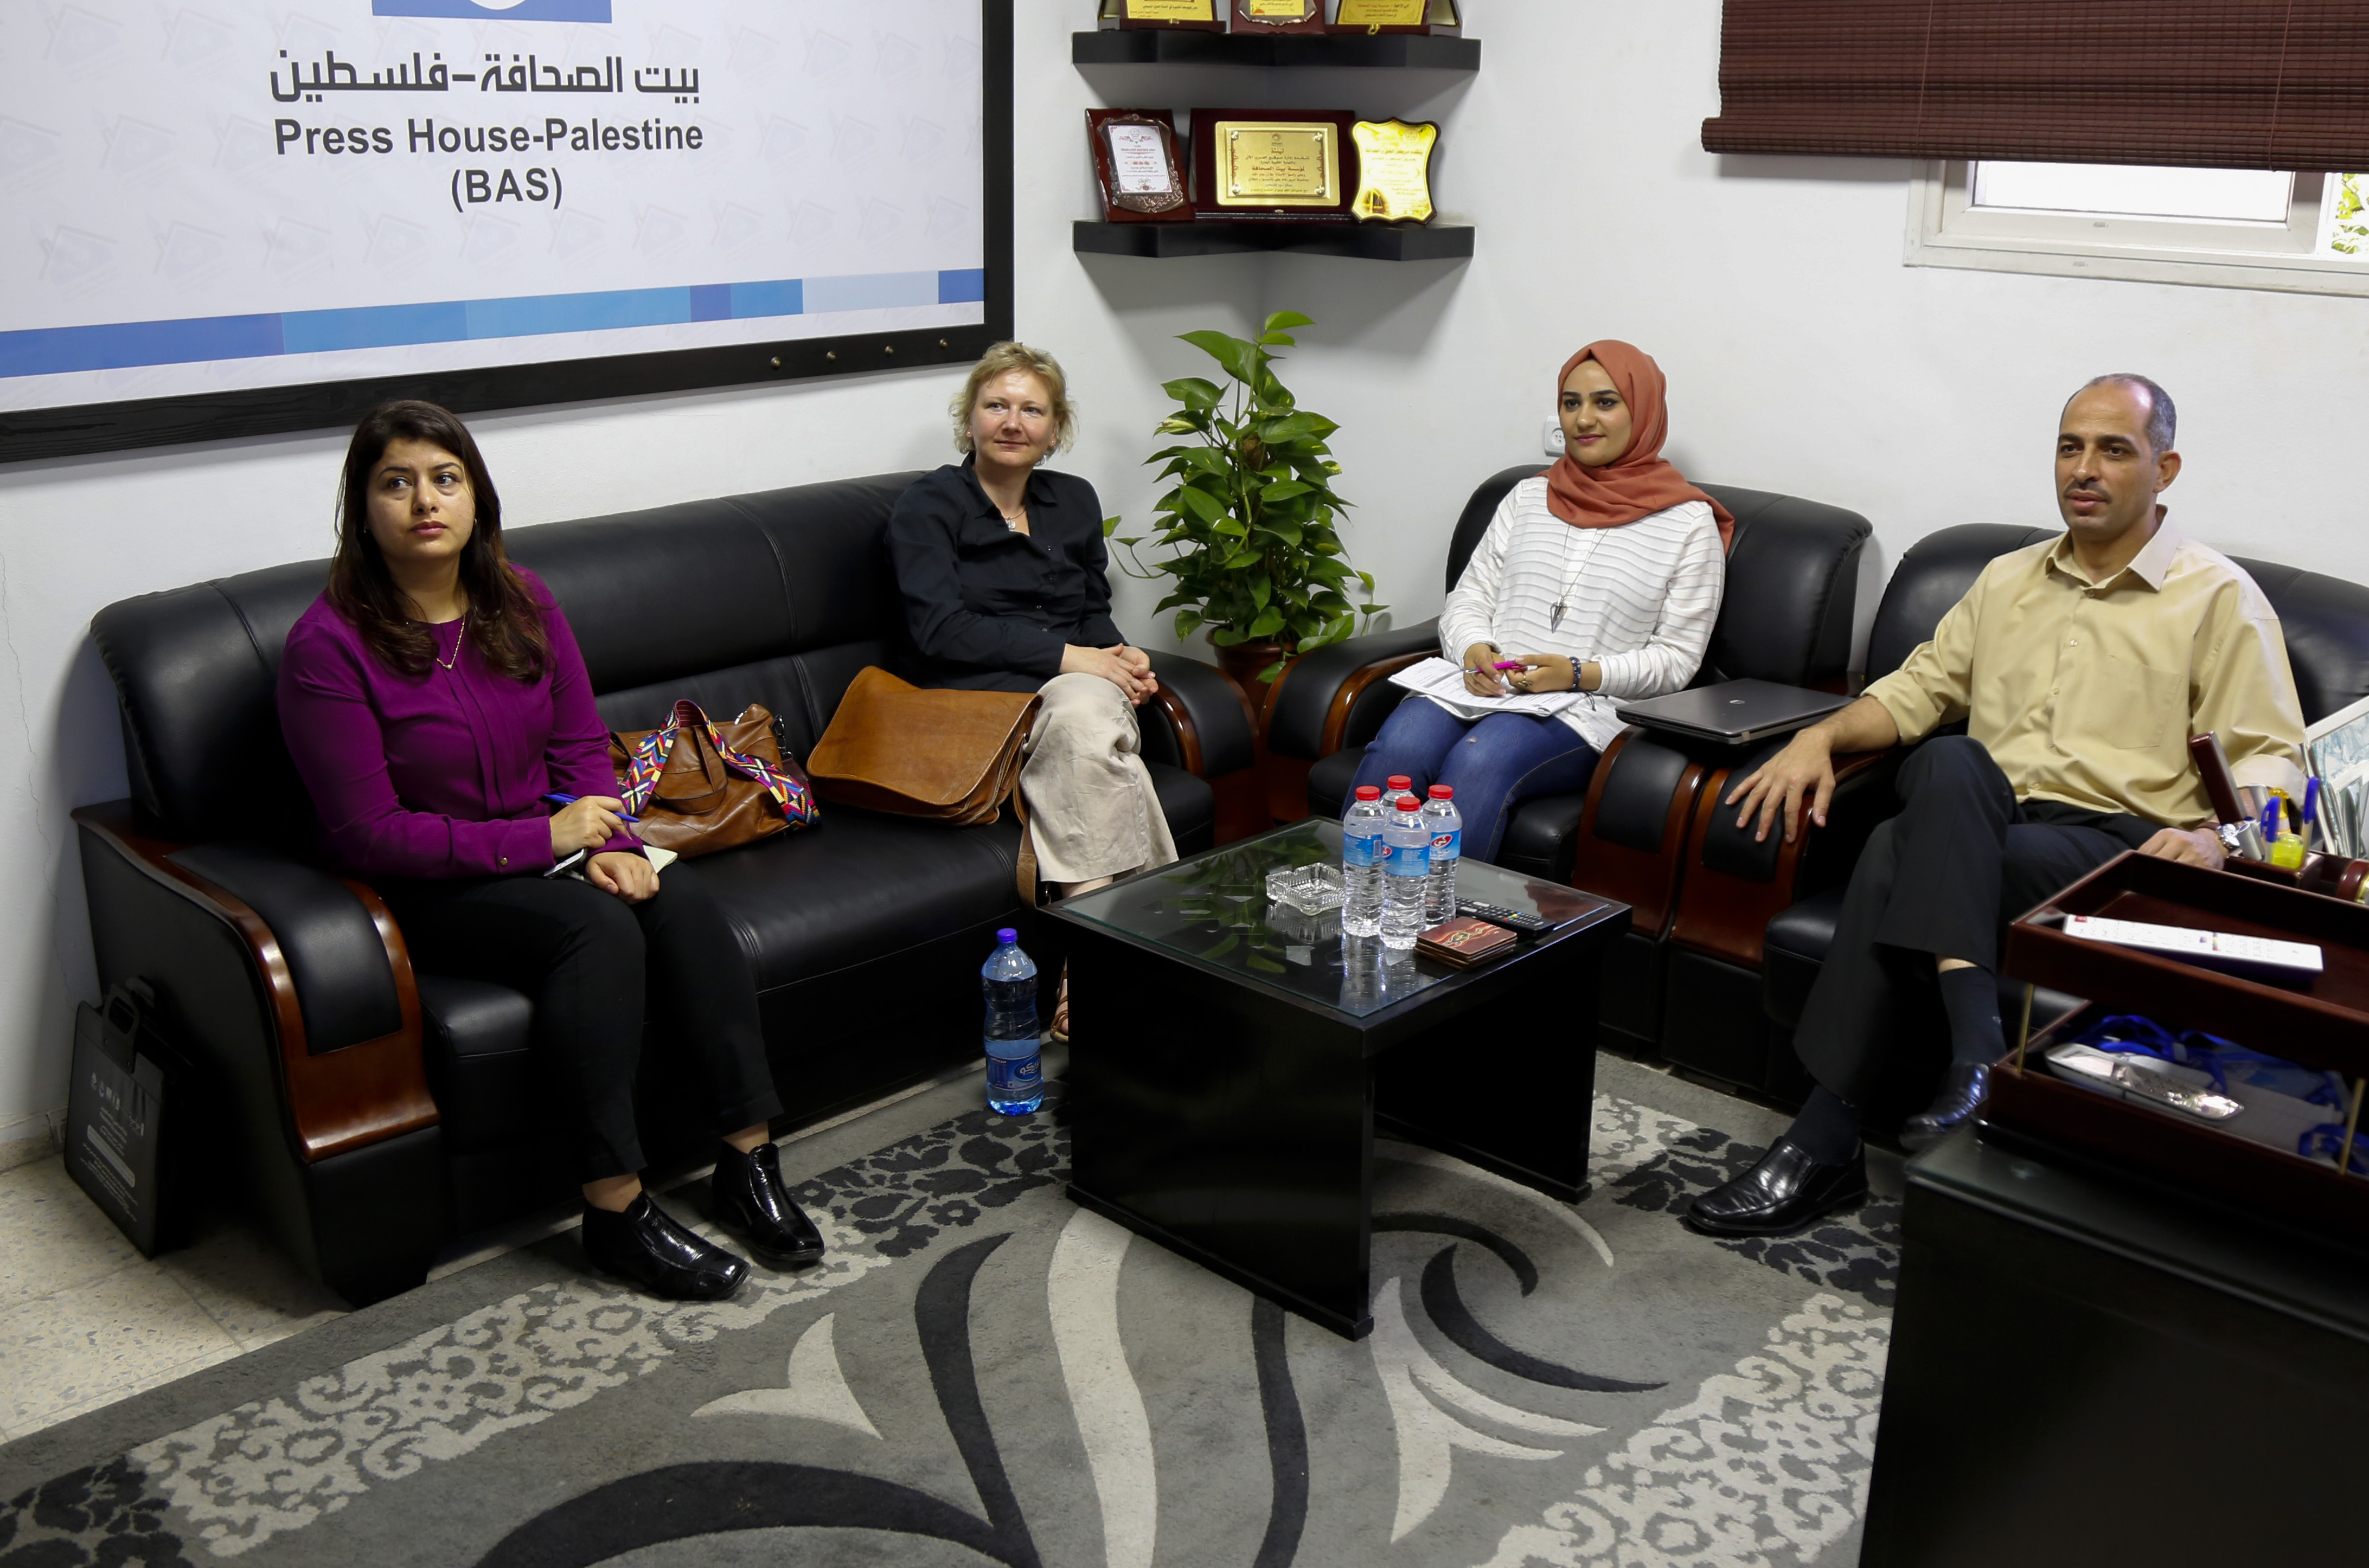 مديرة مؤسسة روزا لوكسمبورغ في فلسطين تزور بيت الصحافة